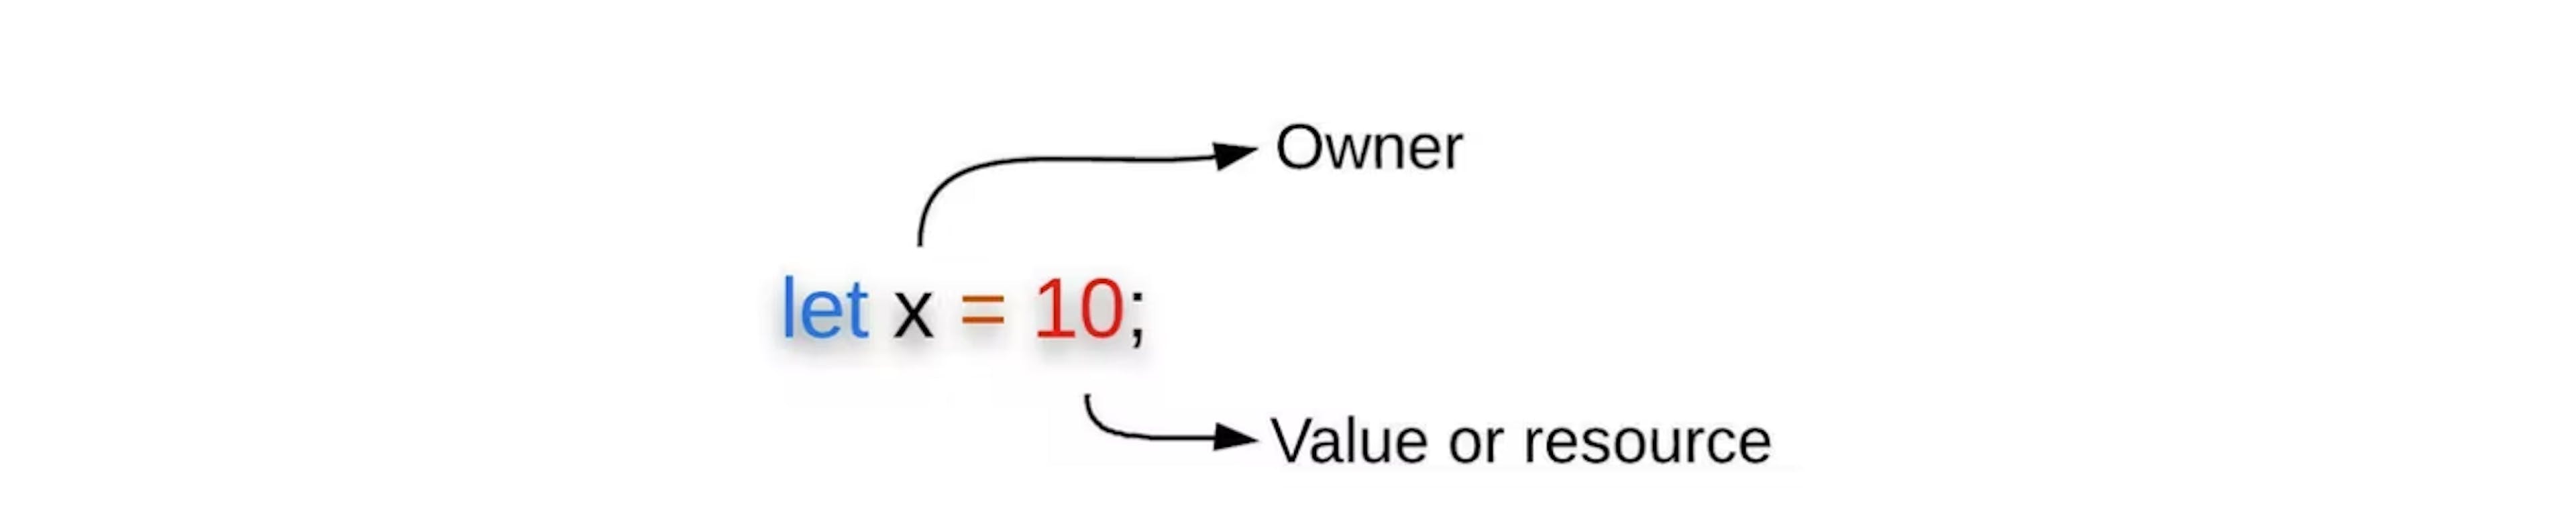 图 3：变量绑定显示所有者及其值/资源。